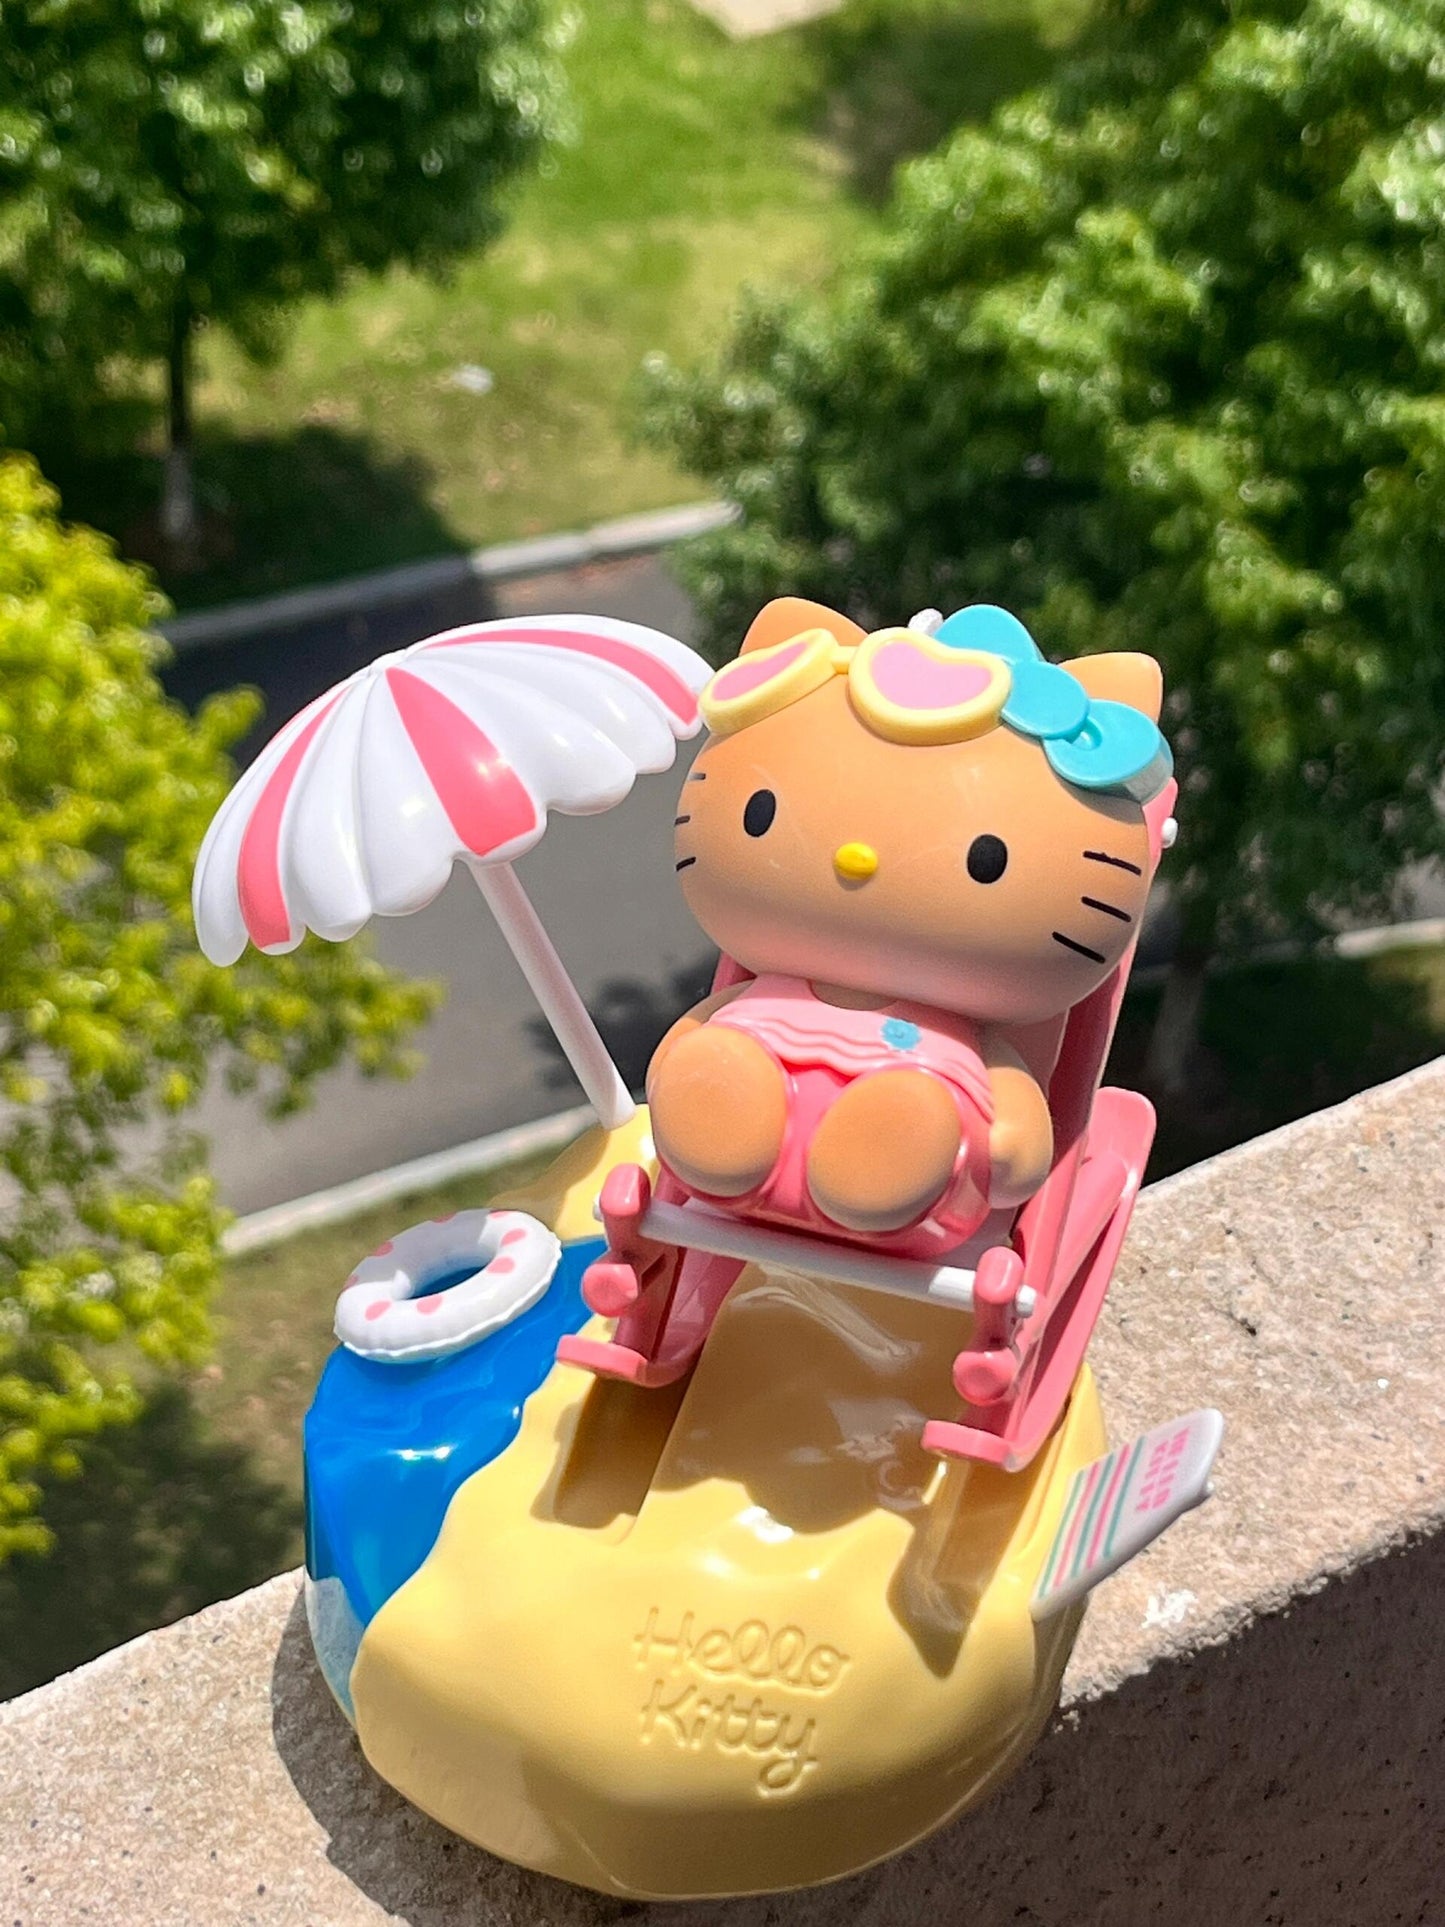 Hellokitty Sunlight Turns Tan Music Box Pizza Hut Co-branded Toys